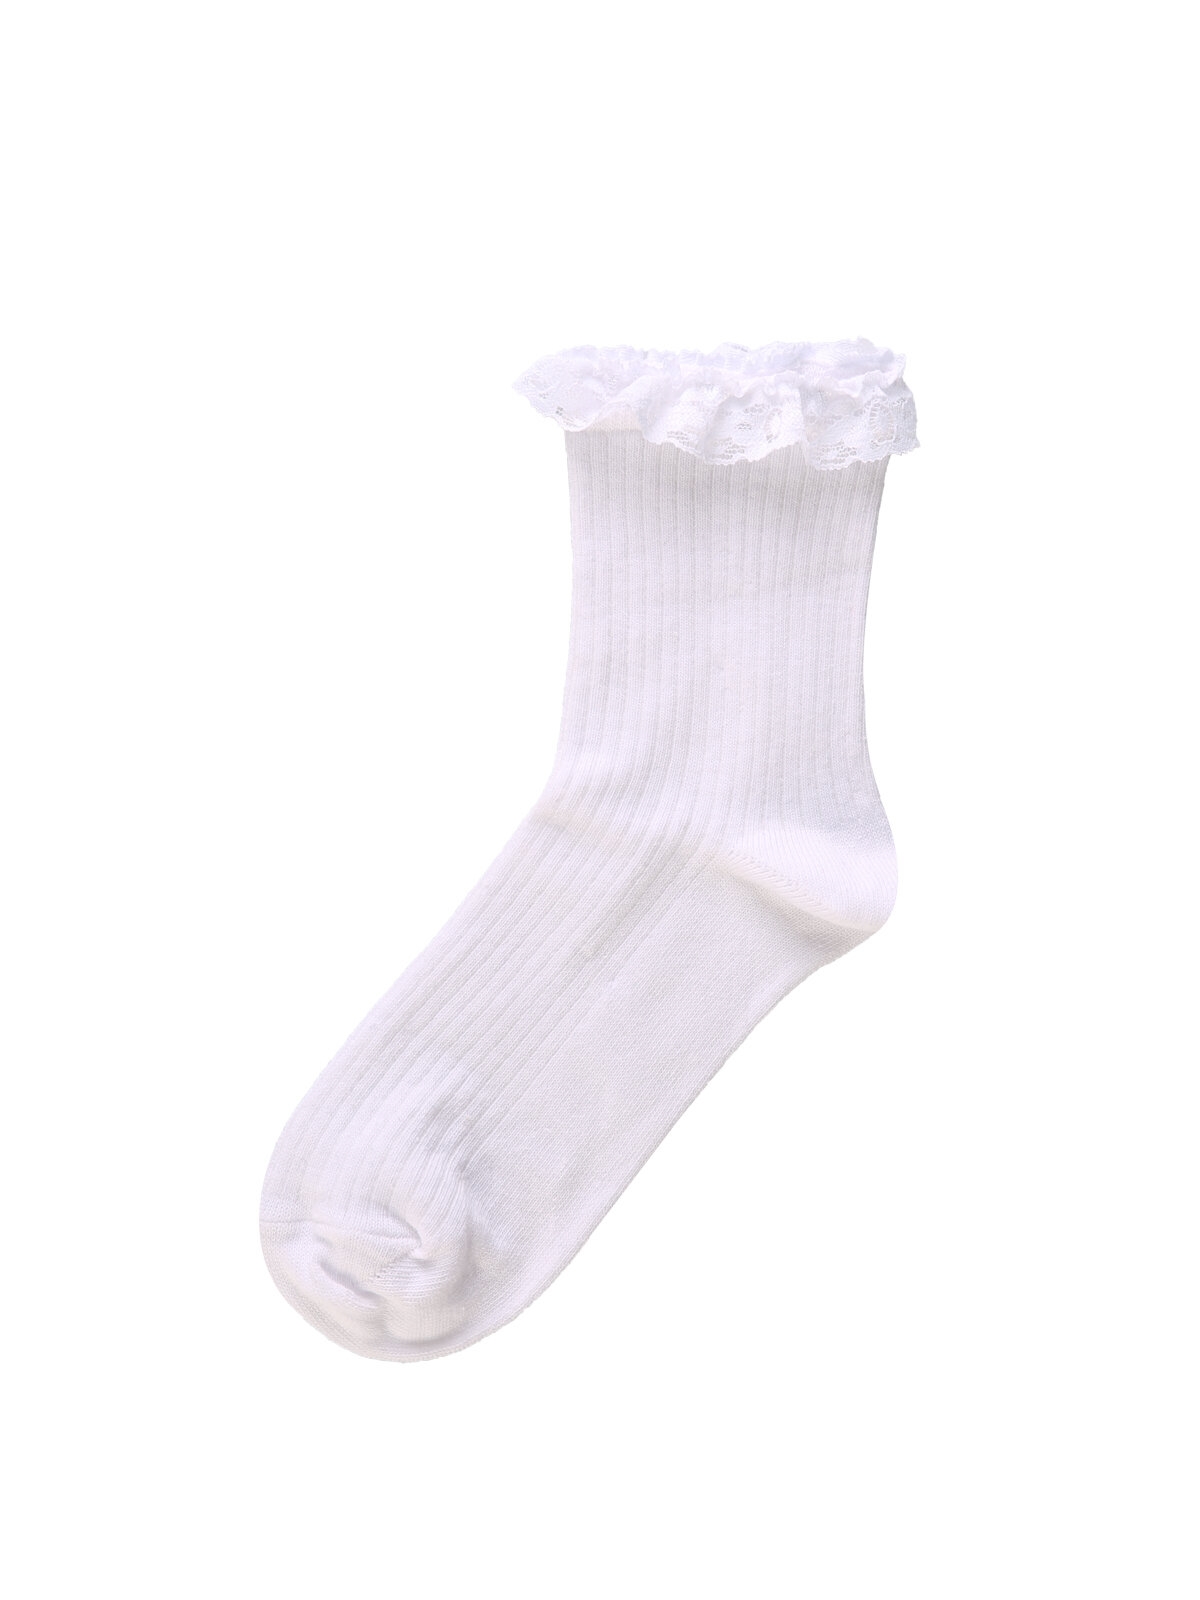 Показати інформацію про Шкарпетки Жіночі Білі Cl1040900